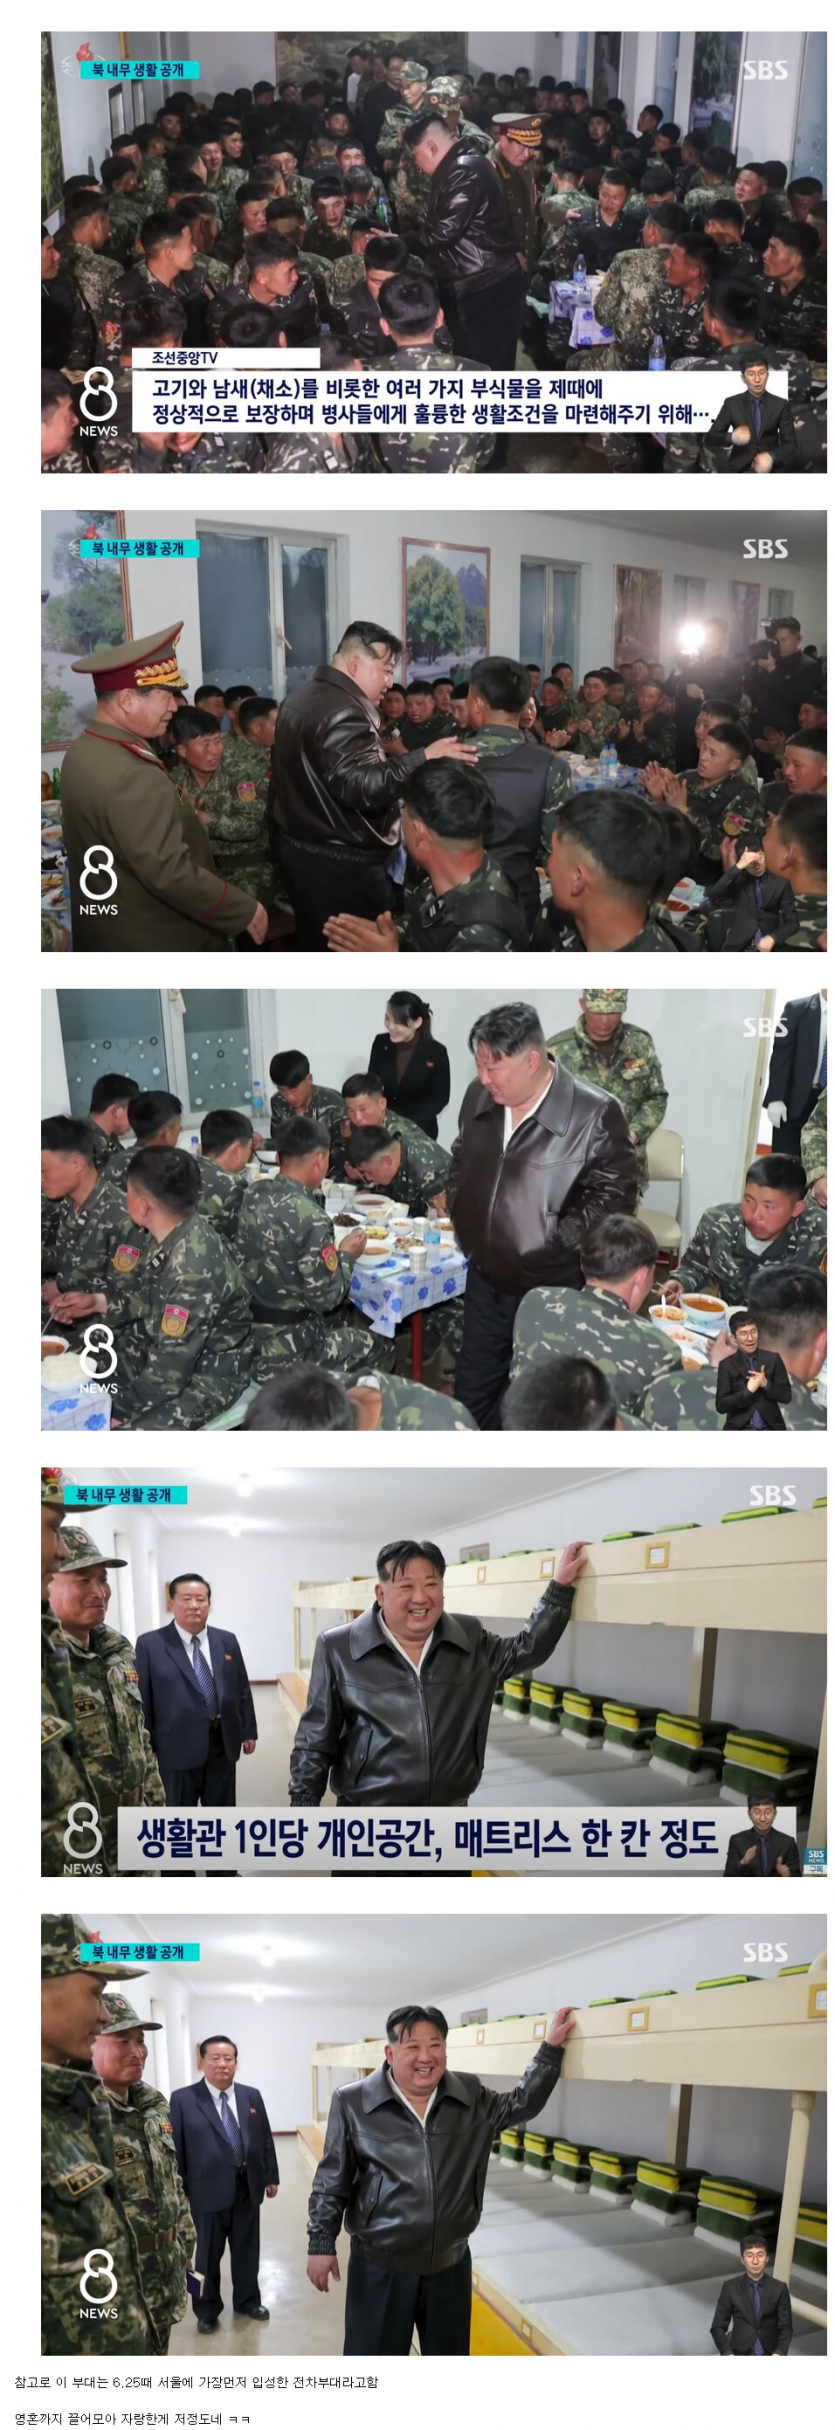 이번에 북한이 공개한 부대 식사 및 생활관(0)